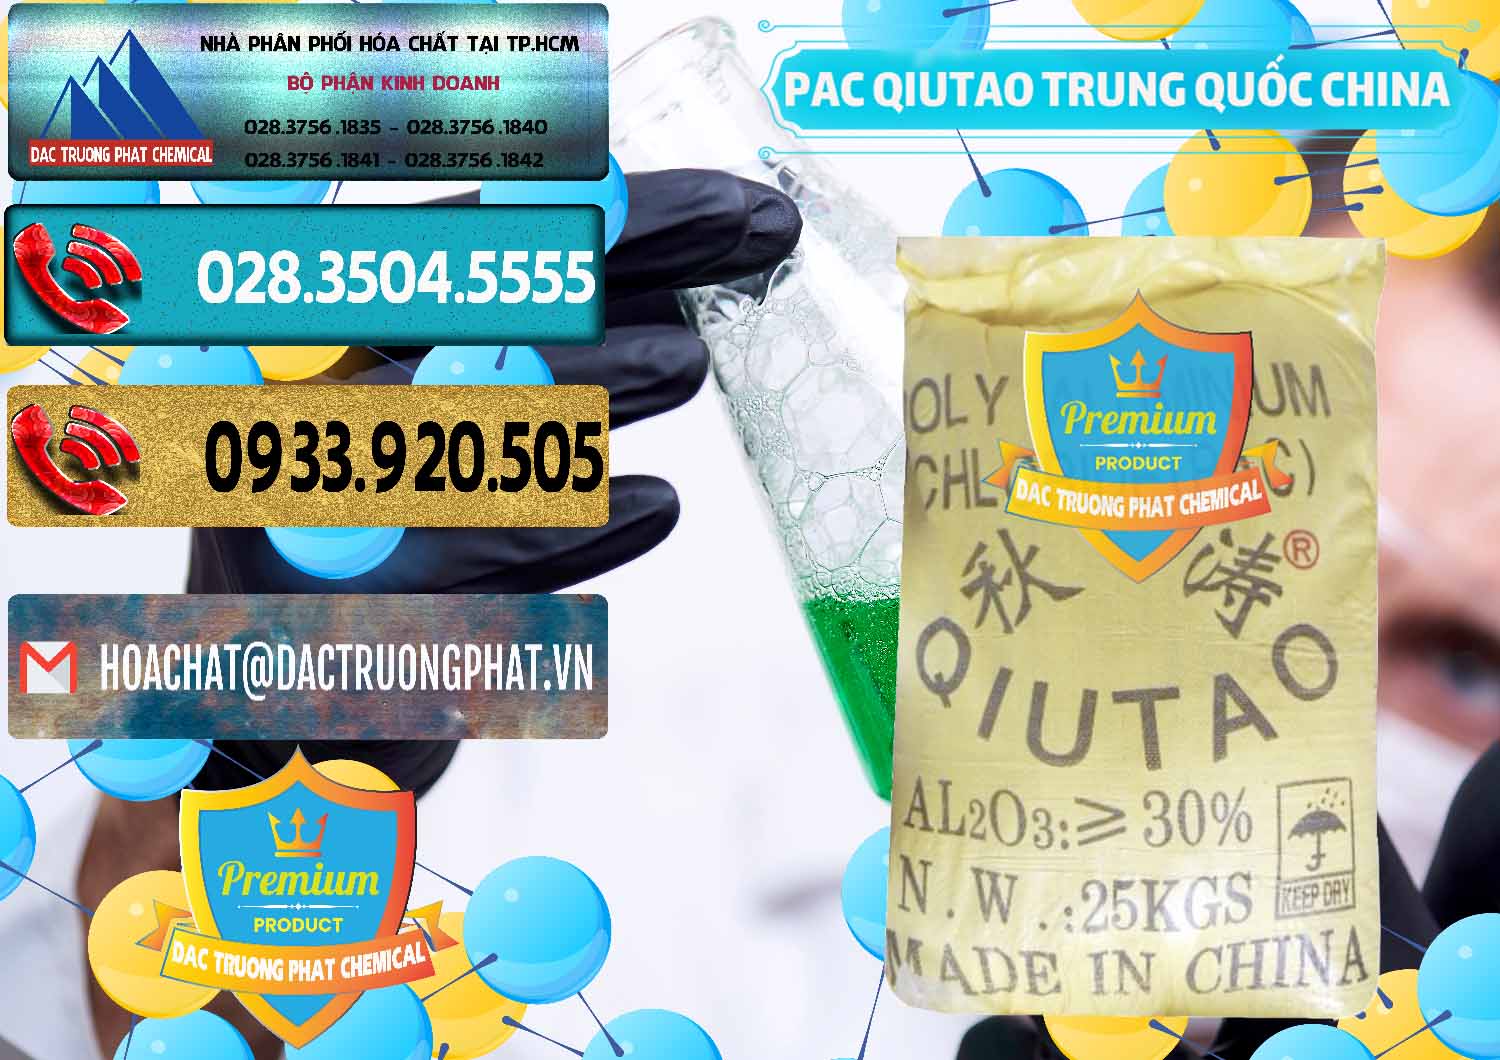 Kinh doanh ( bán ) PAC - Polyaluminium Chloride Qiutao Trung Quốc China - 0267 - Nơi phân phối ( cung cấp ) hóa chất tại TP.HCM - hoachatdetnhuom.com